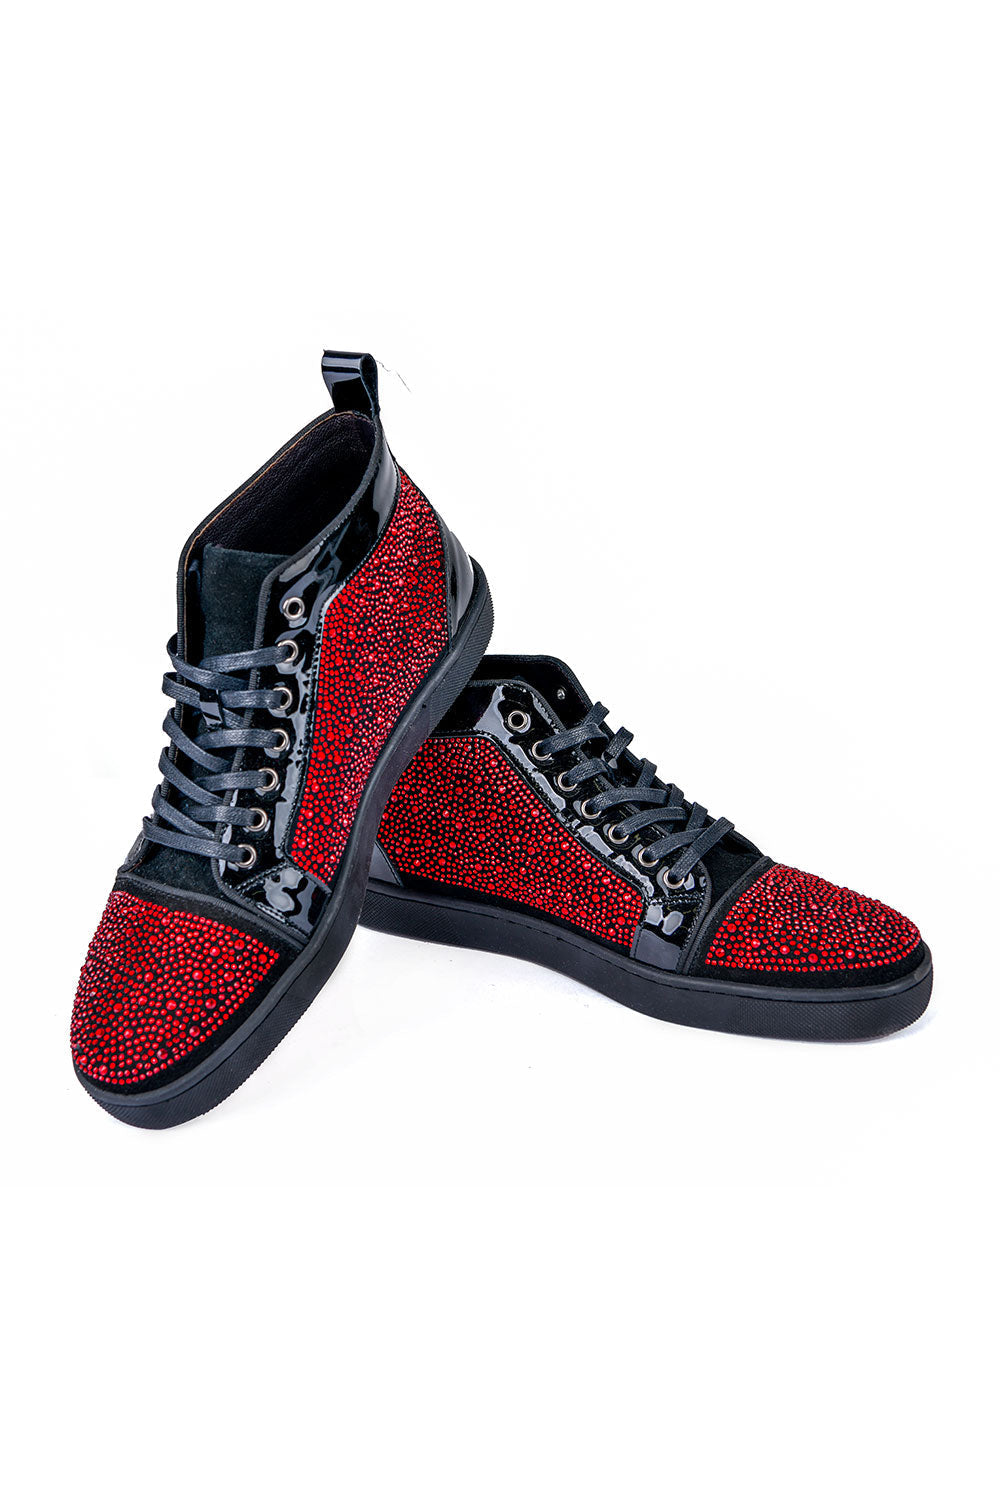 Barabas men's luxury rhinestone black Red high-top sneakers SH705